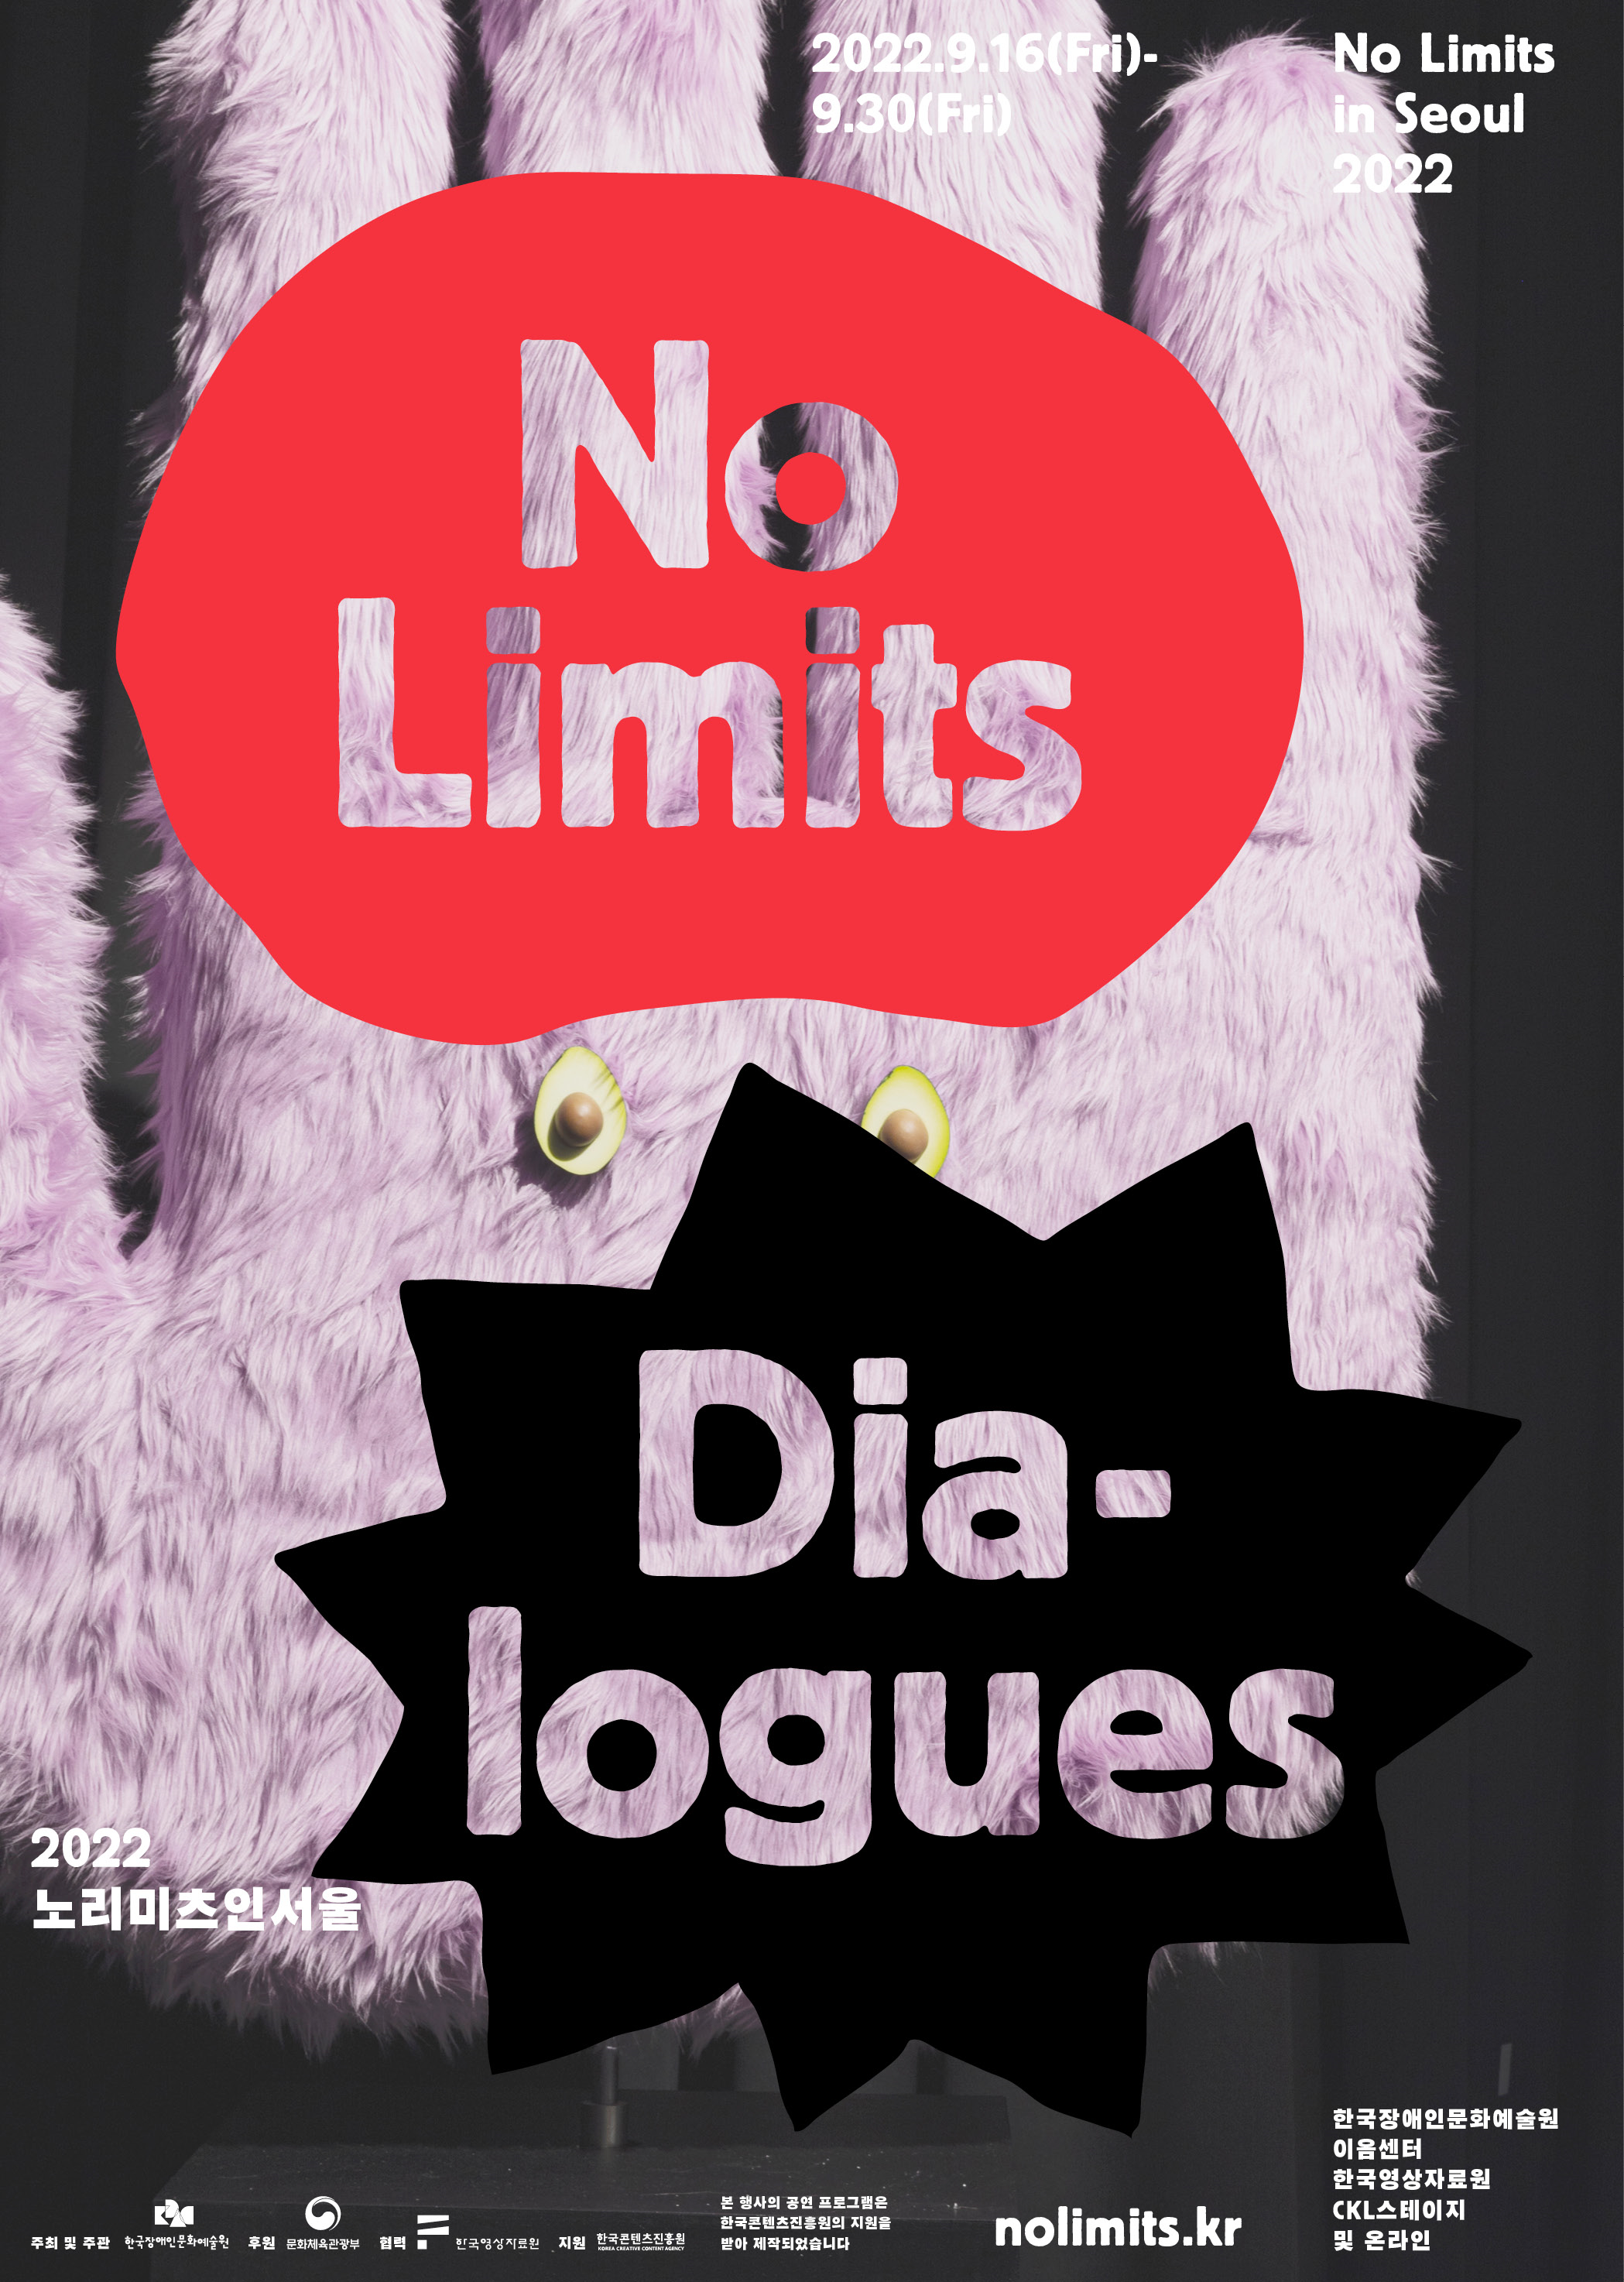 ▲ No Limits in Seoul 2022 노리미츠인서울 중 토론 프로그램이 포함된 세션 ‘노리미츠 다이얼로그’ 포스터 